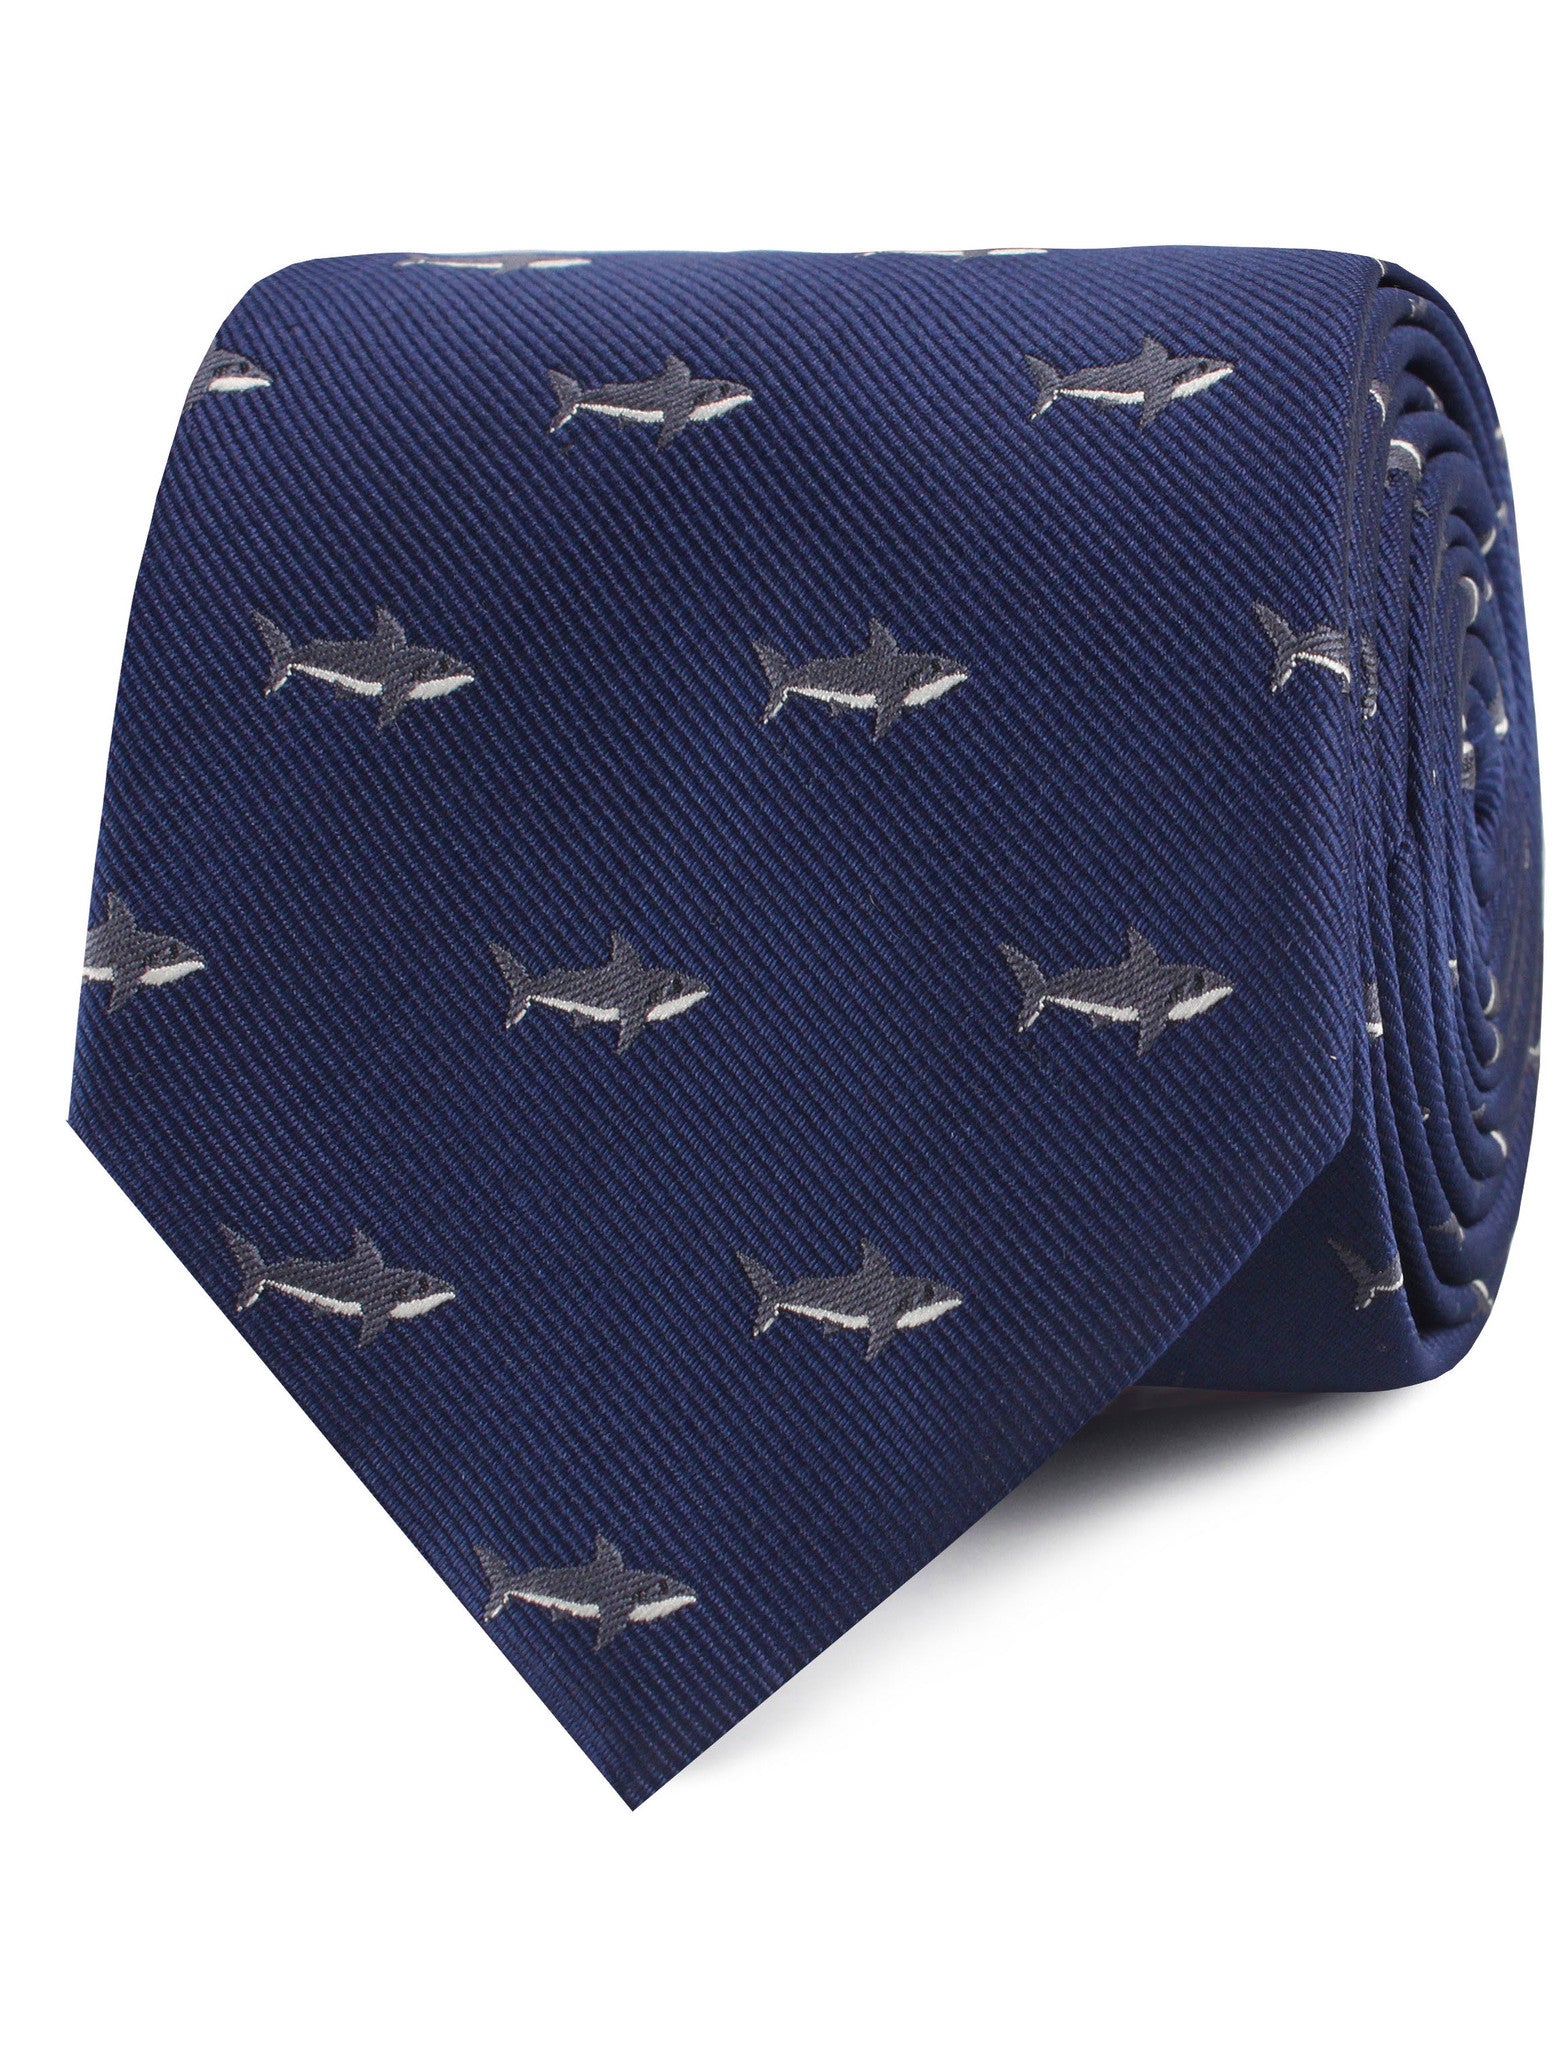 Shark Necktie